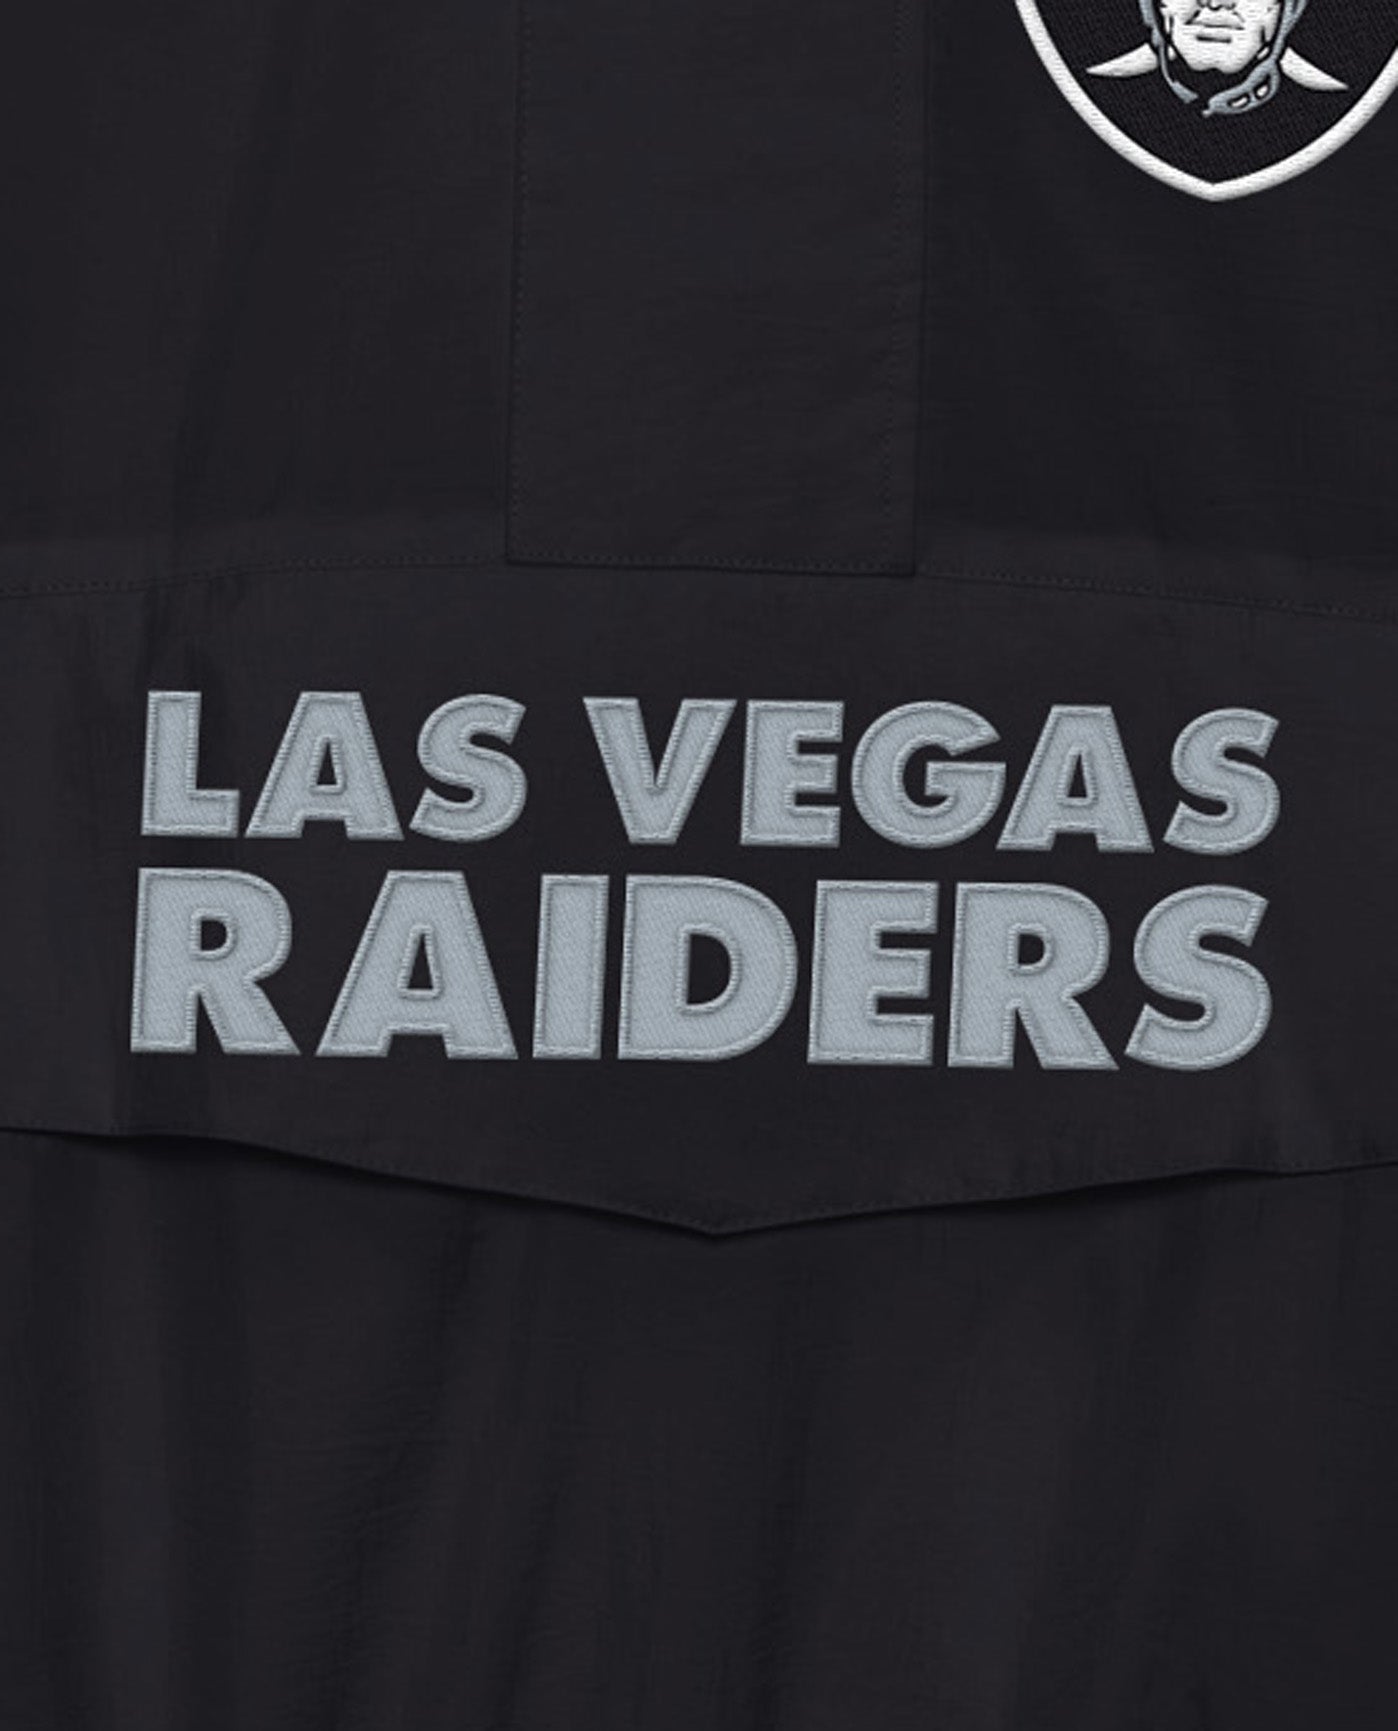 Buy Men's Las Vegas Raiders Clothing Online